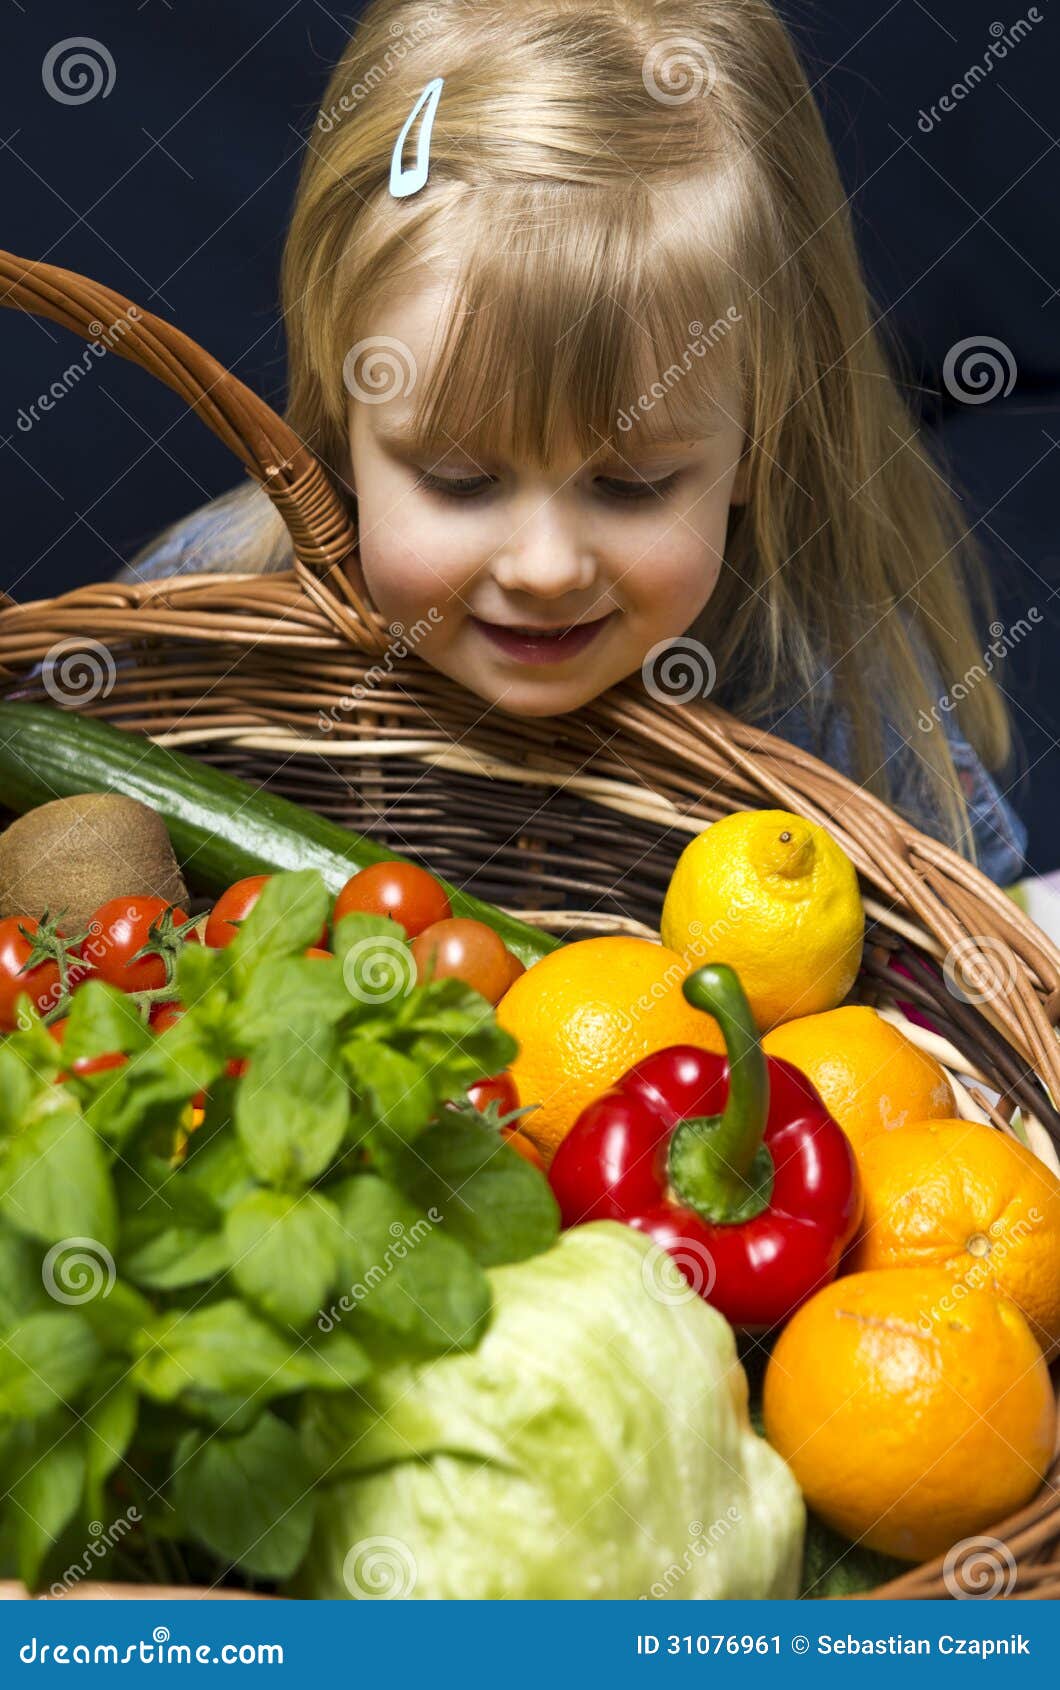 Meisje Met Mand Van Fruit En Groenten Stock Afbeelding Image Of